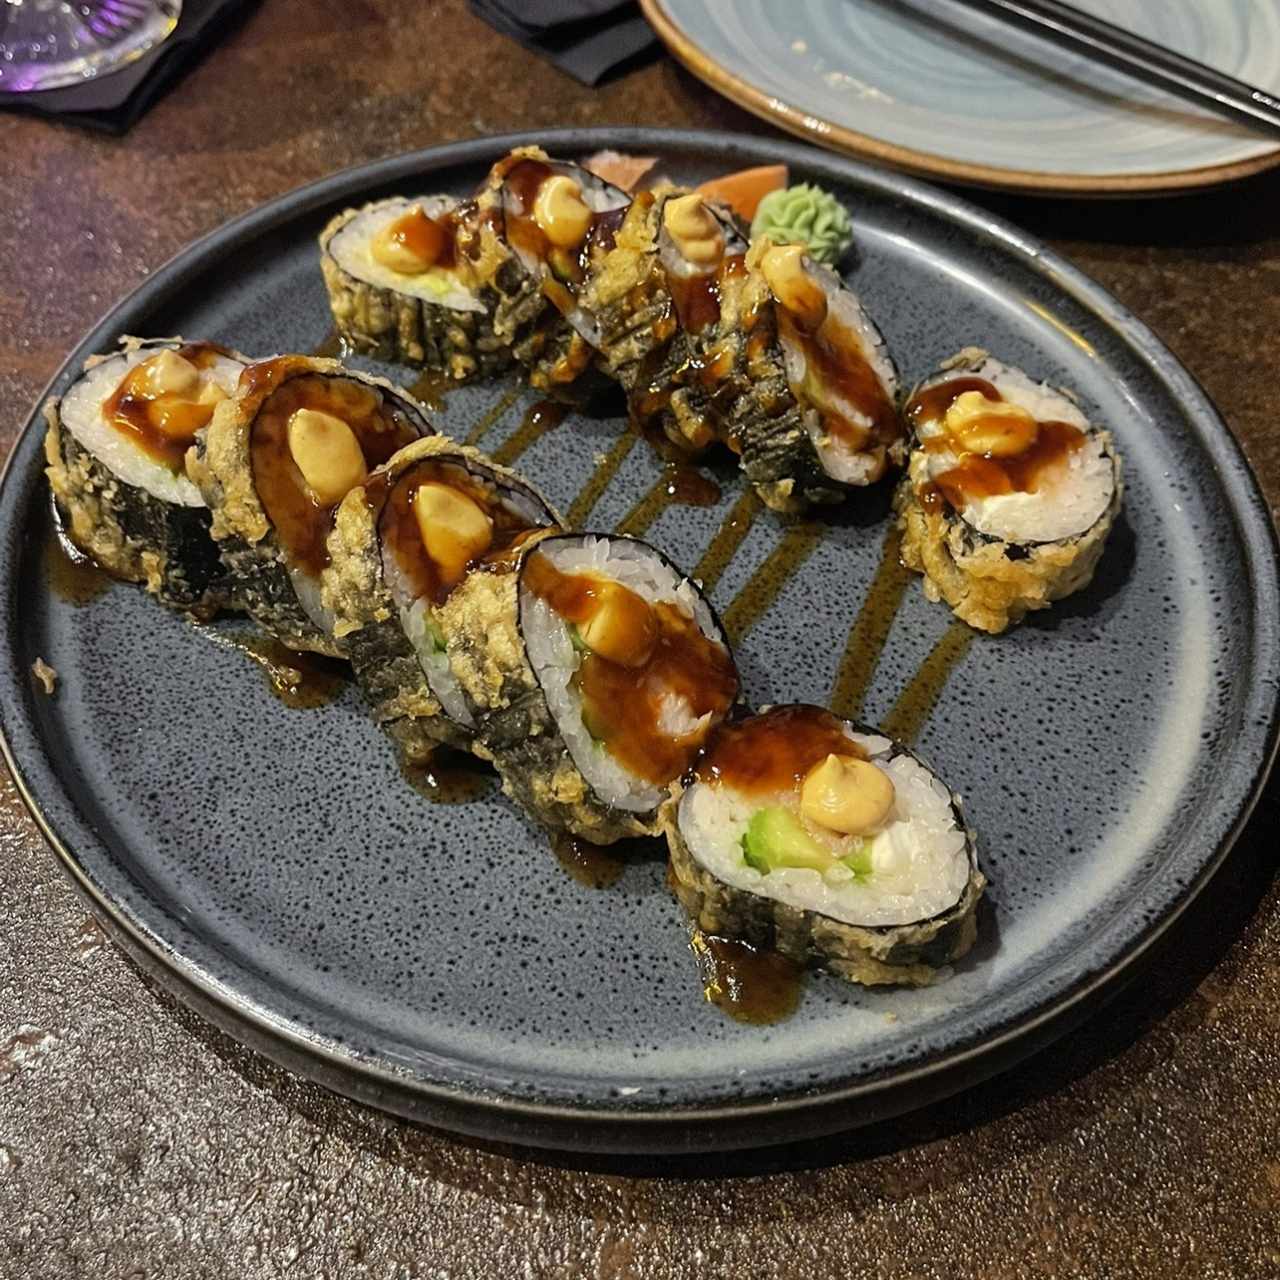 Sushi Rolls - Tiger Wood Rolls